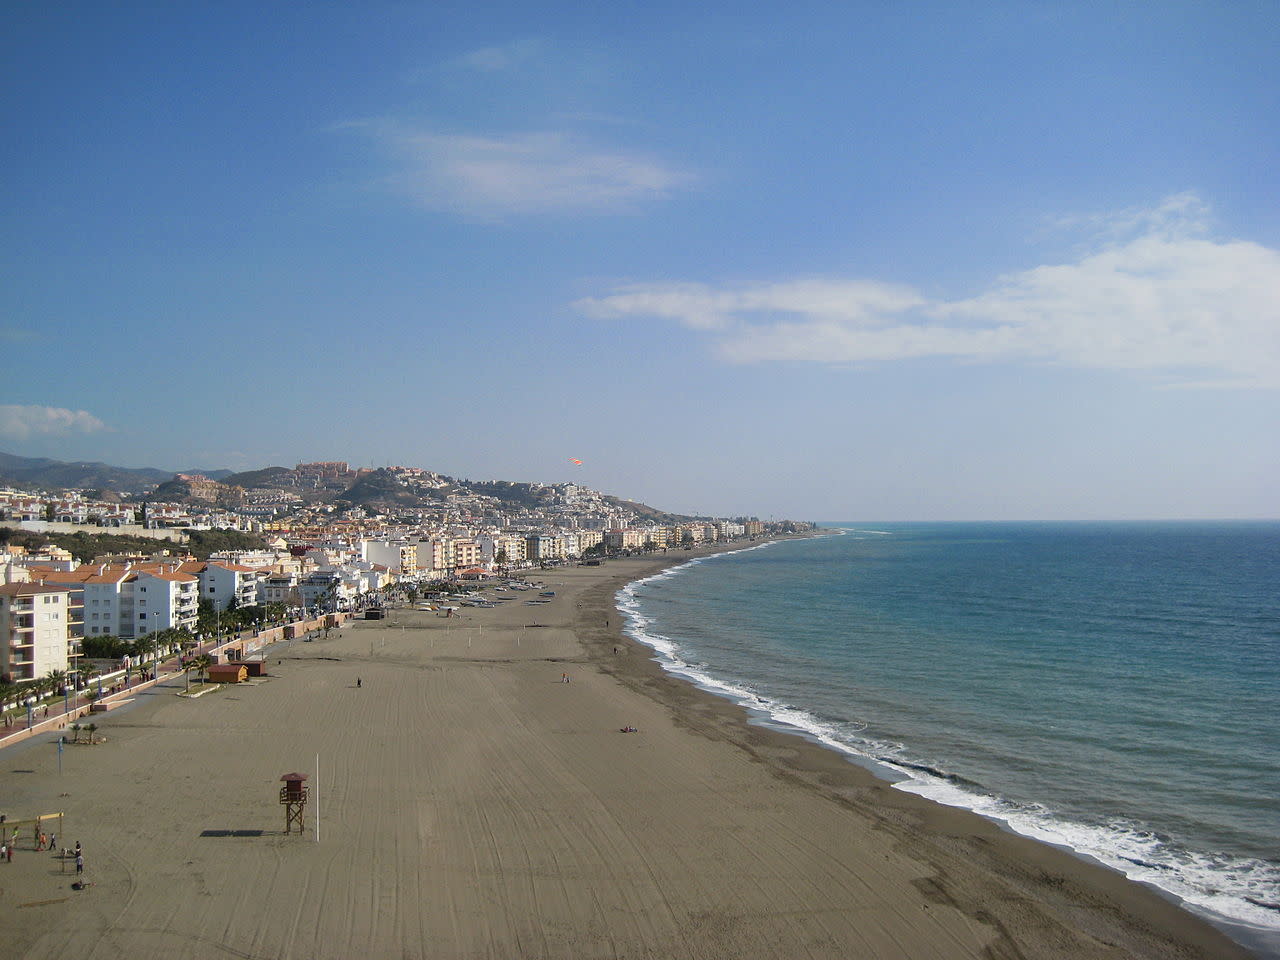 Foto gemaakt door Wikimedia - Rincón de la Victoria